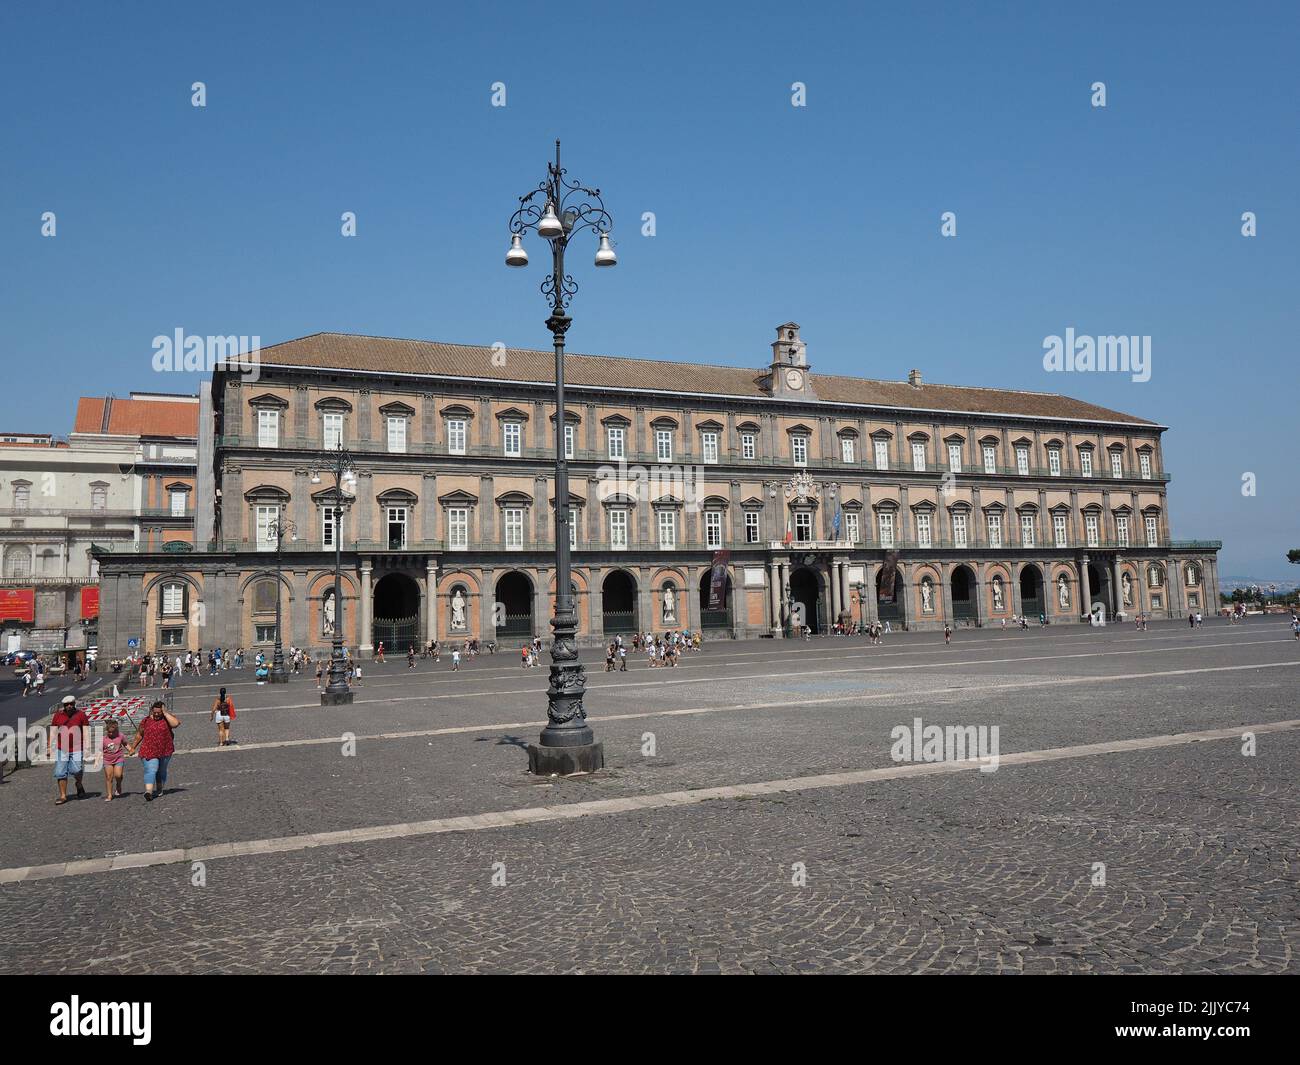 Facciata anteriore del Palazzo reale, o Palazzo reale, nel centro di Napoli, Campania, Italia. La facciata è decorata con grandi statue della K. Foto Stock